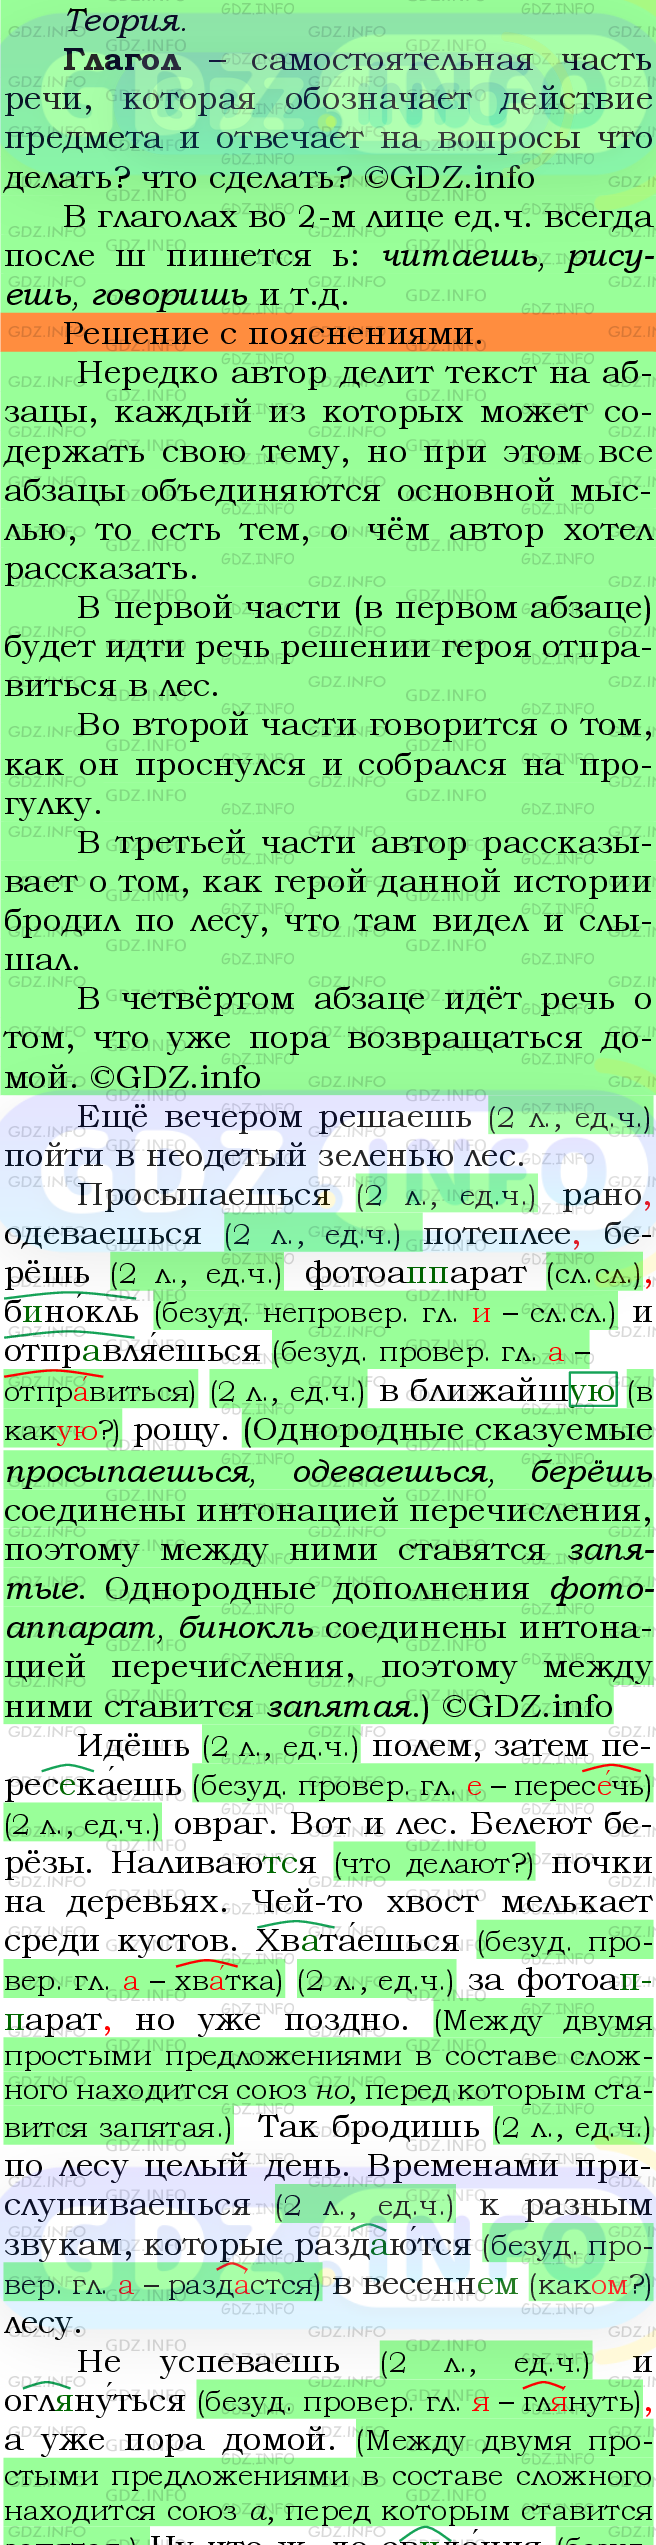 Фото подробного решения: Номер №692 из ГДЗ по Русскому языку 5 класс: Ладыженская Т.А.